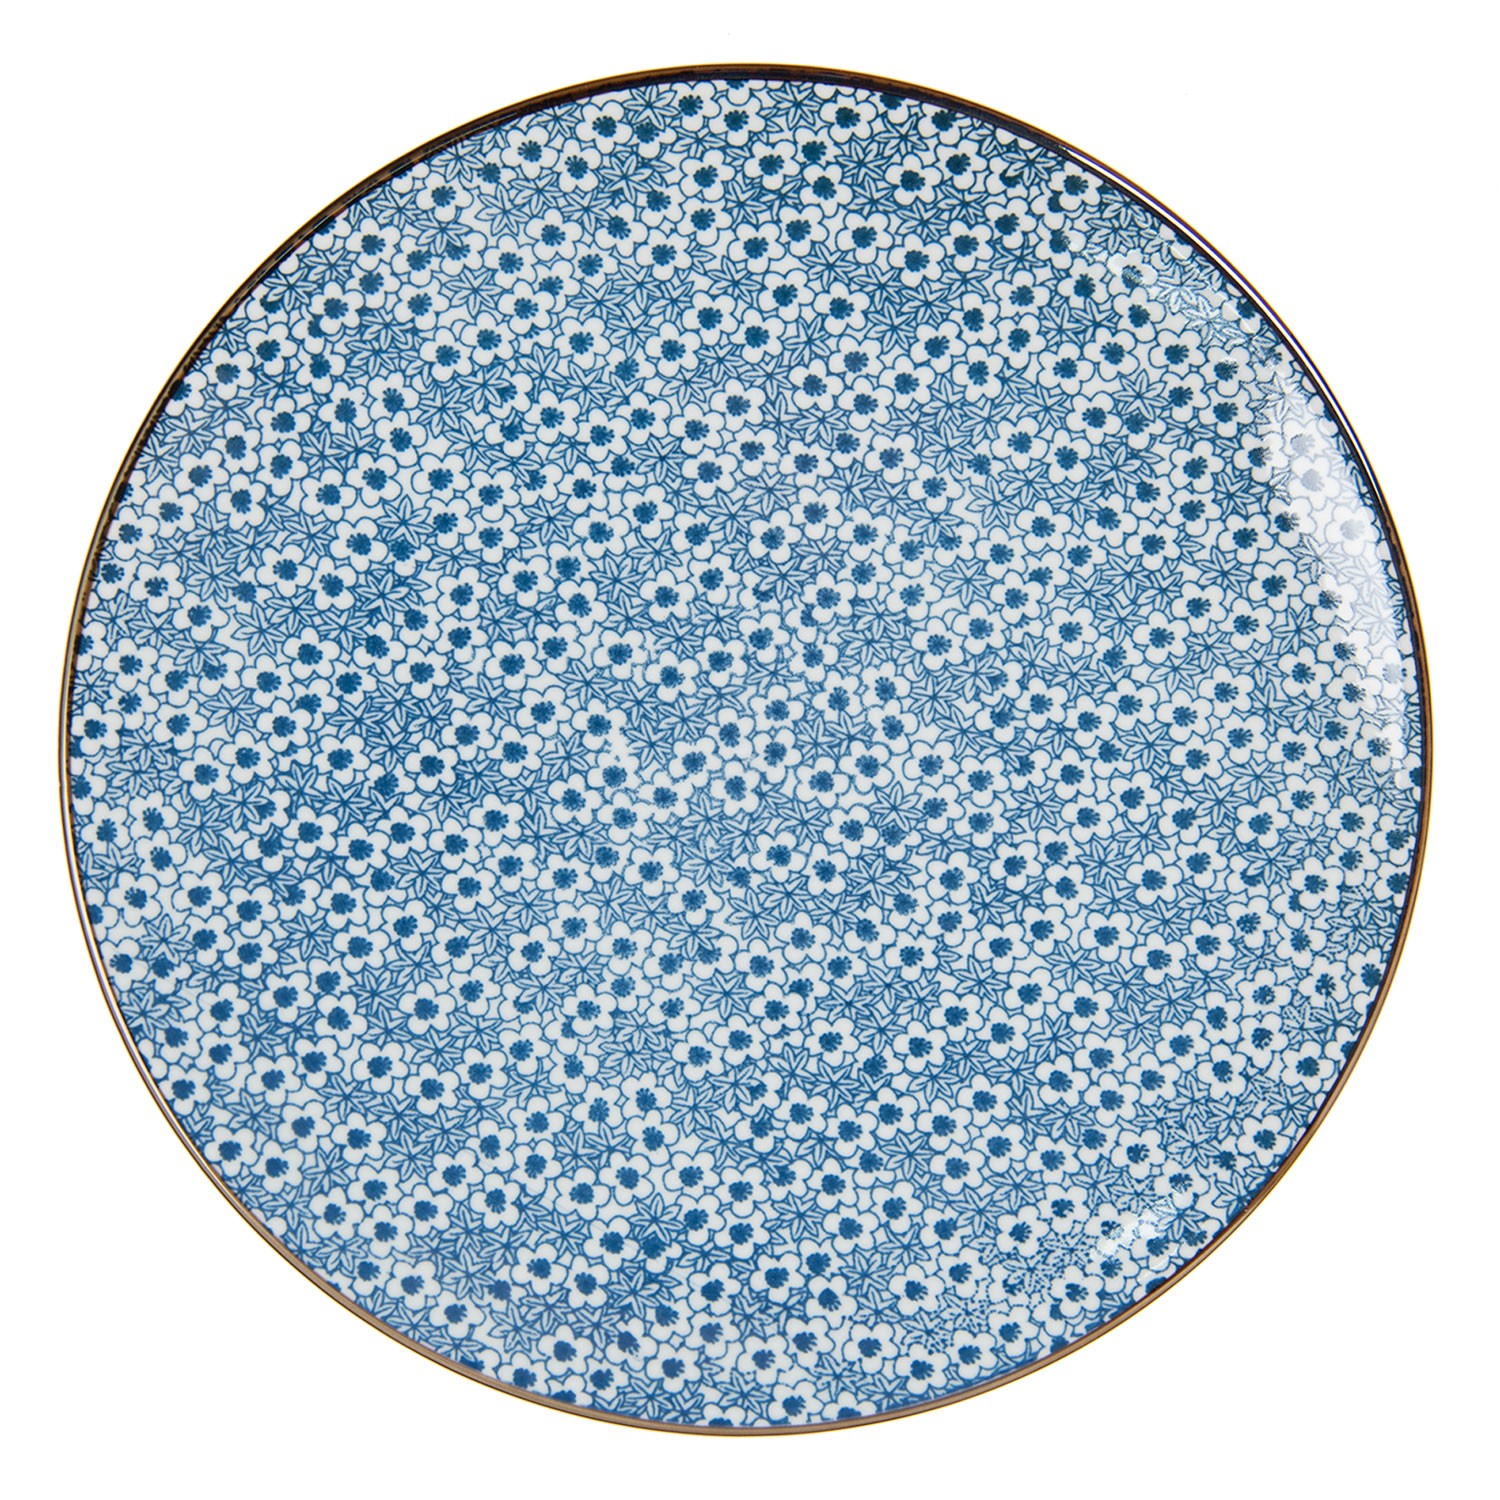 Jídelní talíř s modrými kvítky BlueFlowers - Ø  26 cm Clayre & Eef